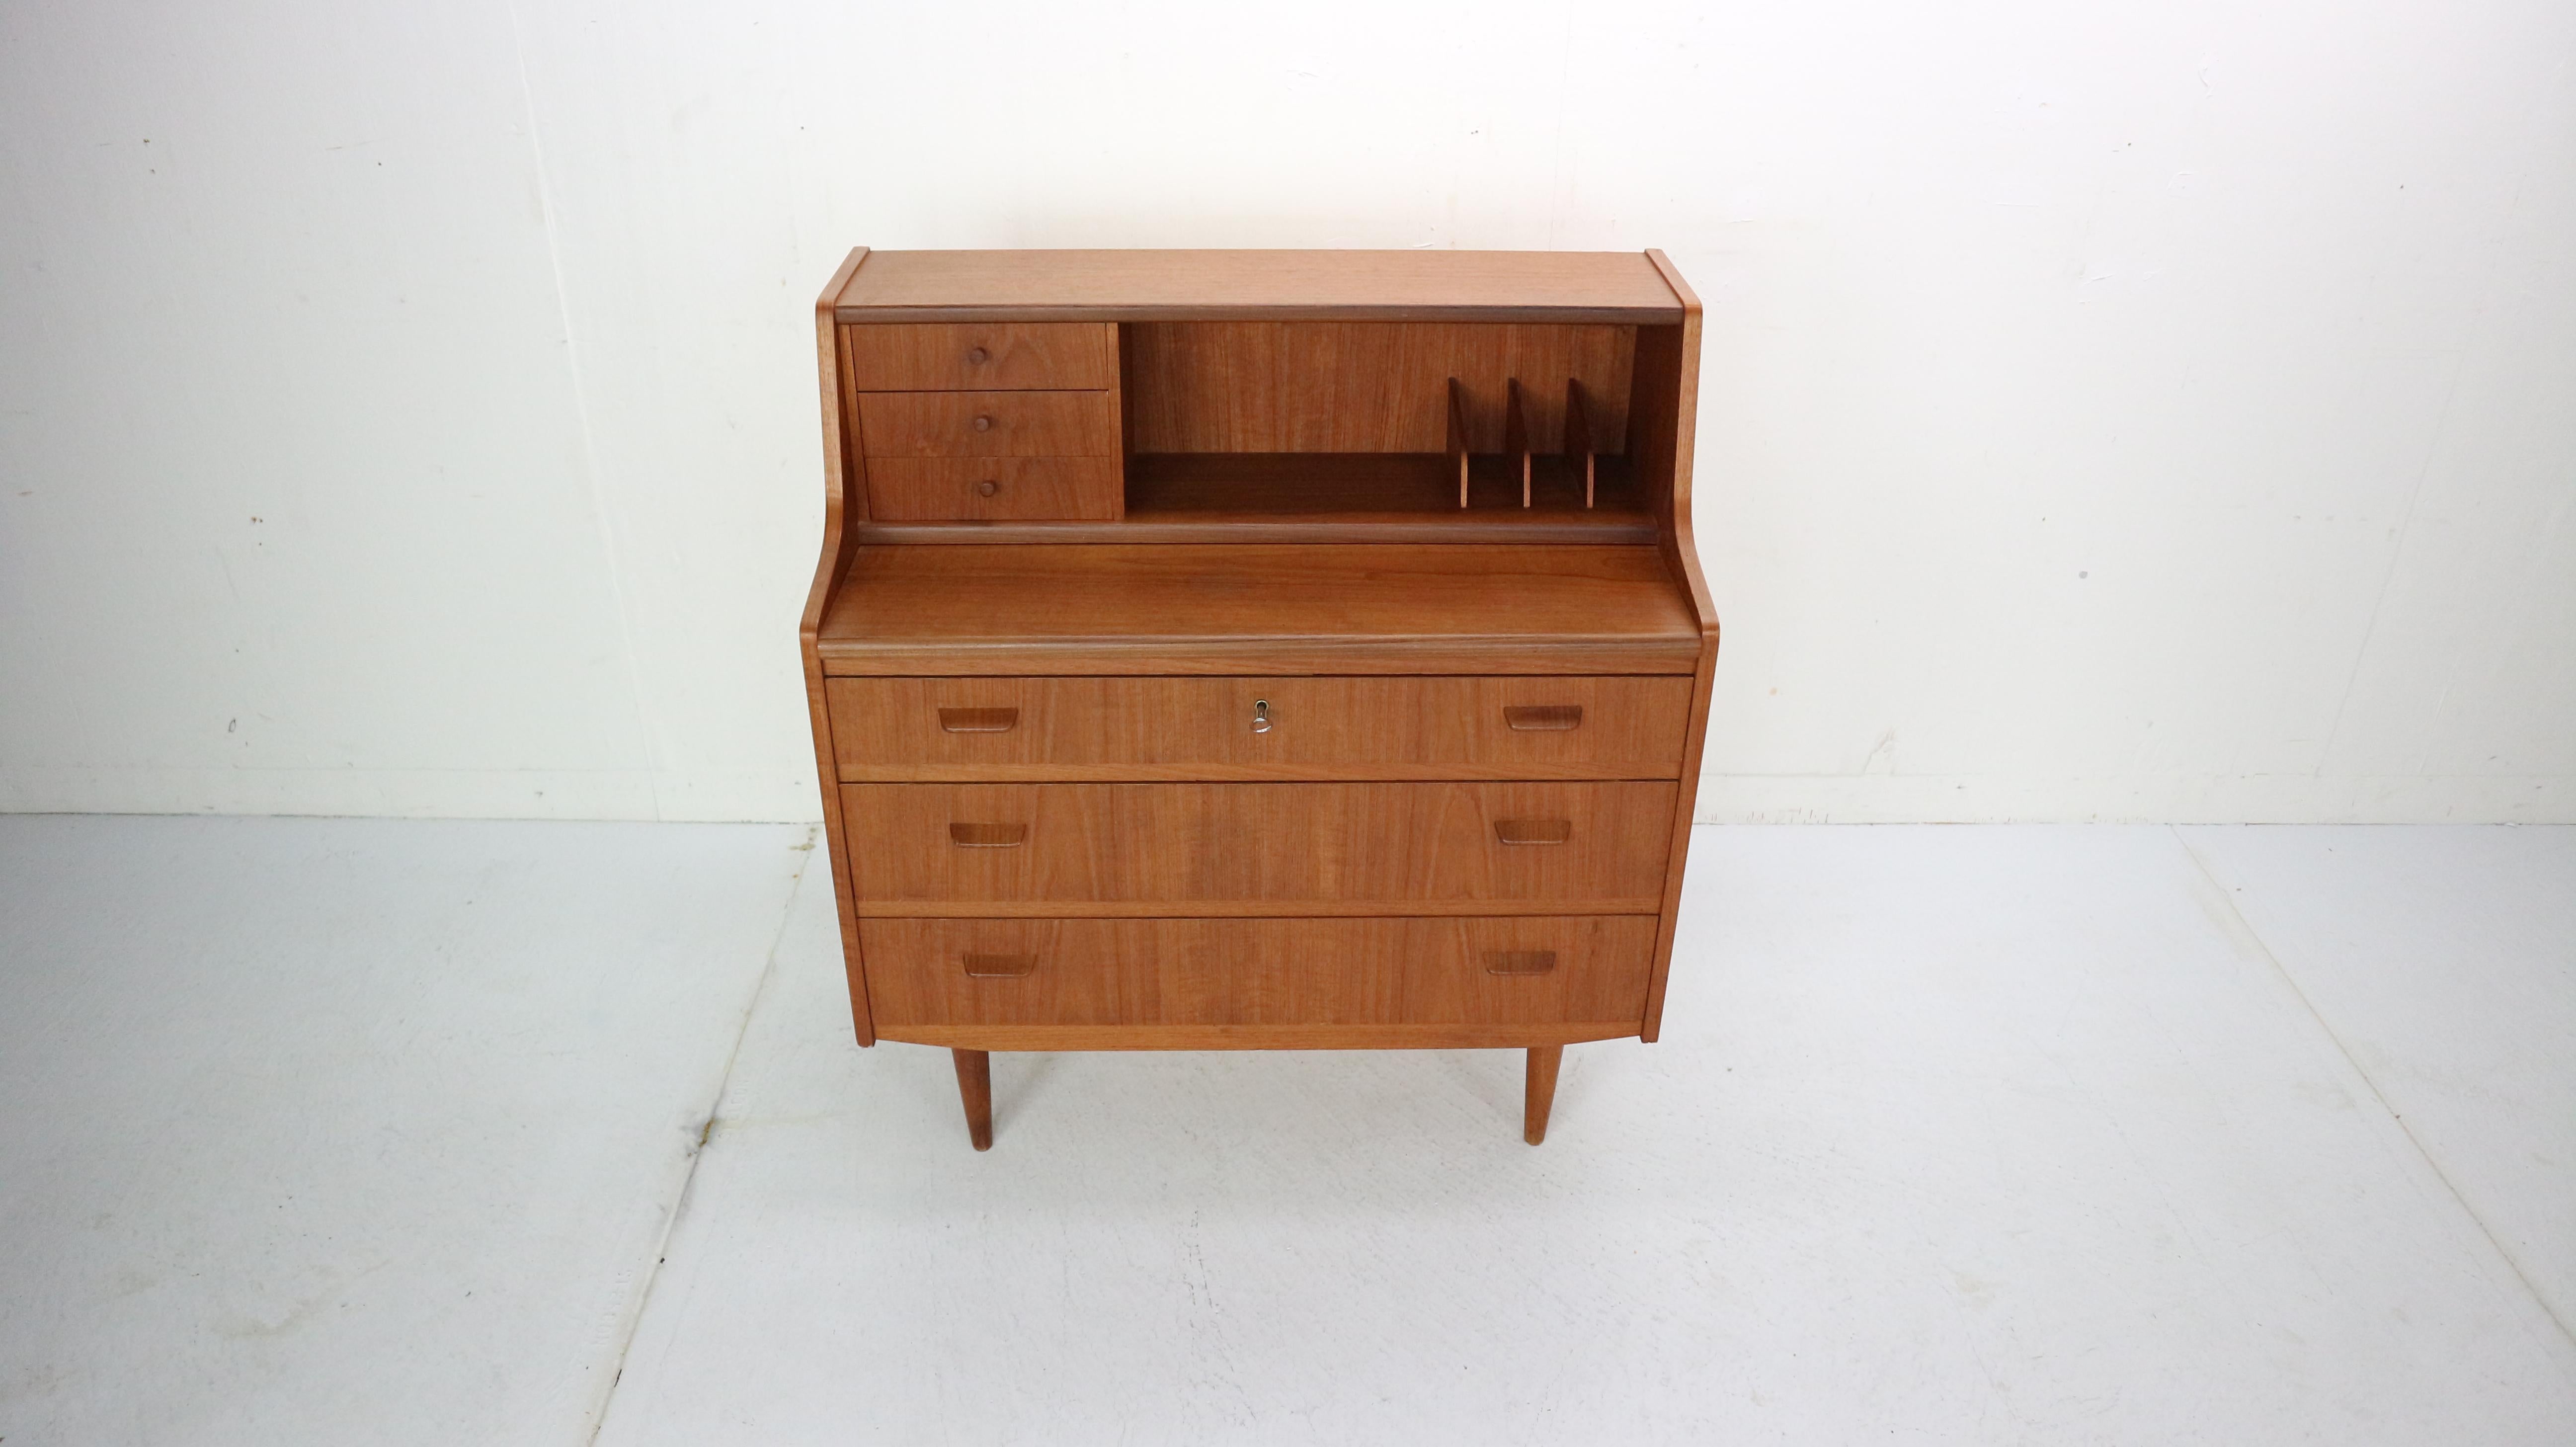 Midcentury Danish Modern Teak Wood Secretary Desk, Chest of Drawers, 1960s (Skandinavische Moderne)